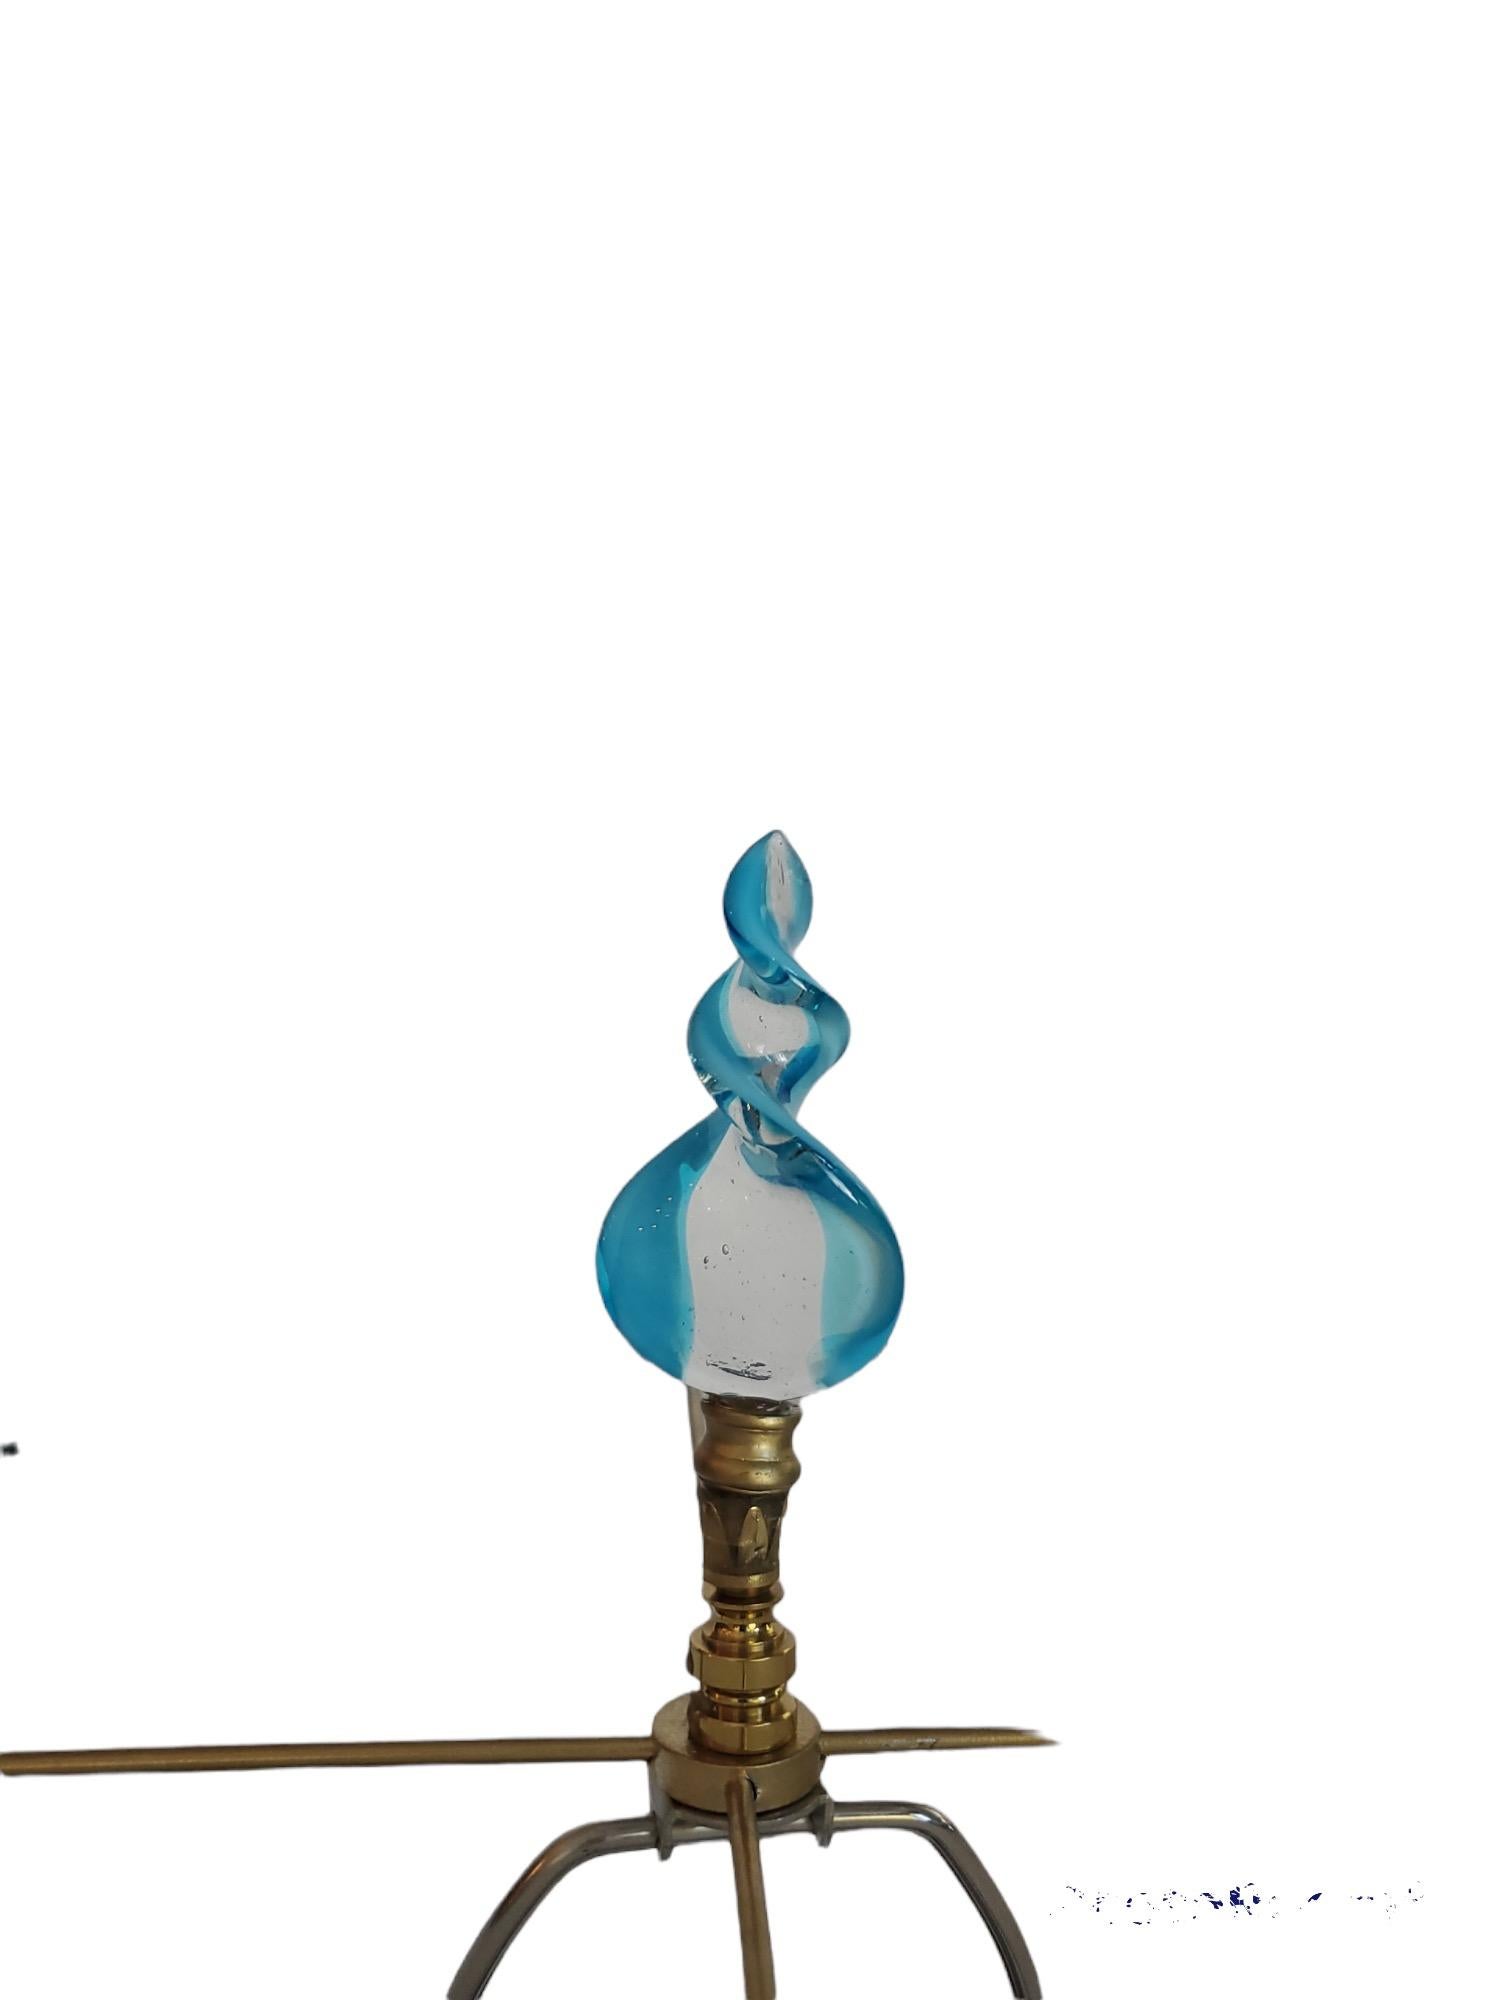 Lampe murano turquoise simple avec base acrylique et câblage neufs. Abat-jour en parchemin peint à la main.